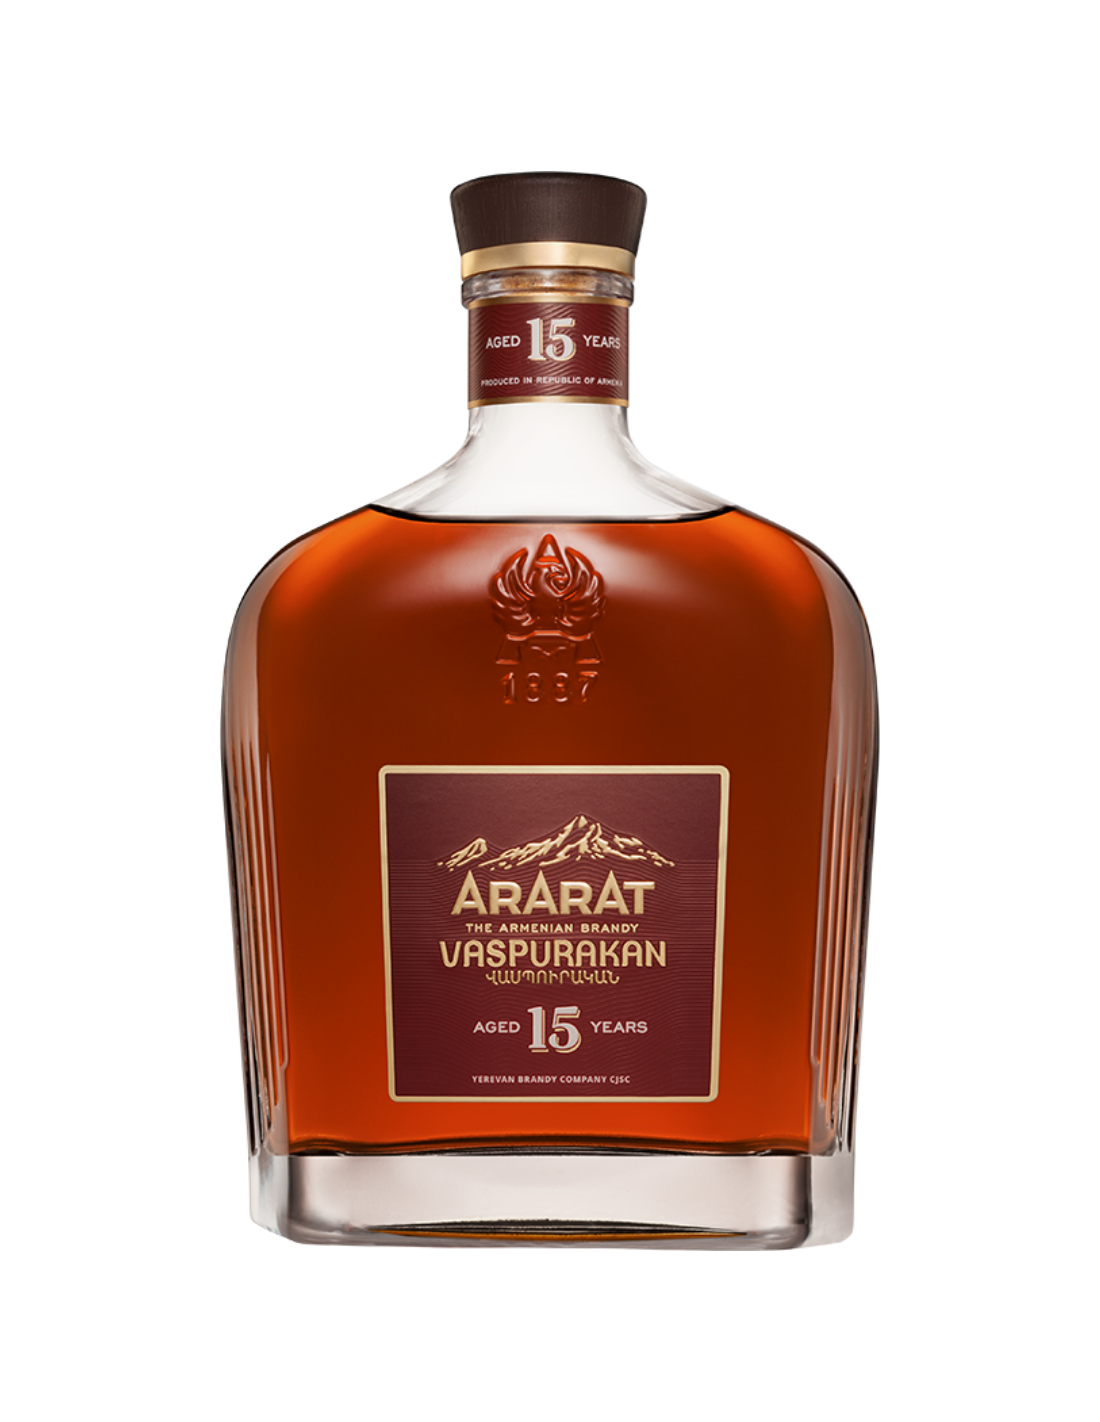 Brandy Ararat Vaspurakan 15 Years, 40% alc., 0.7L, Armenia alcooldiscount.ro